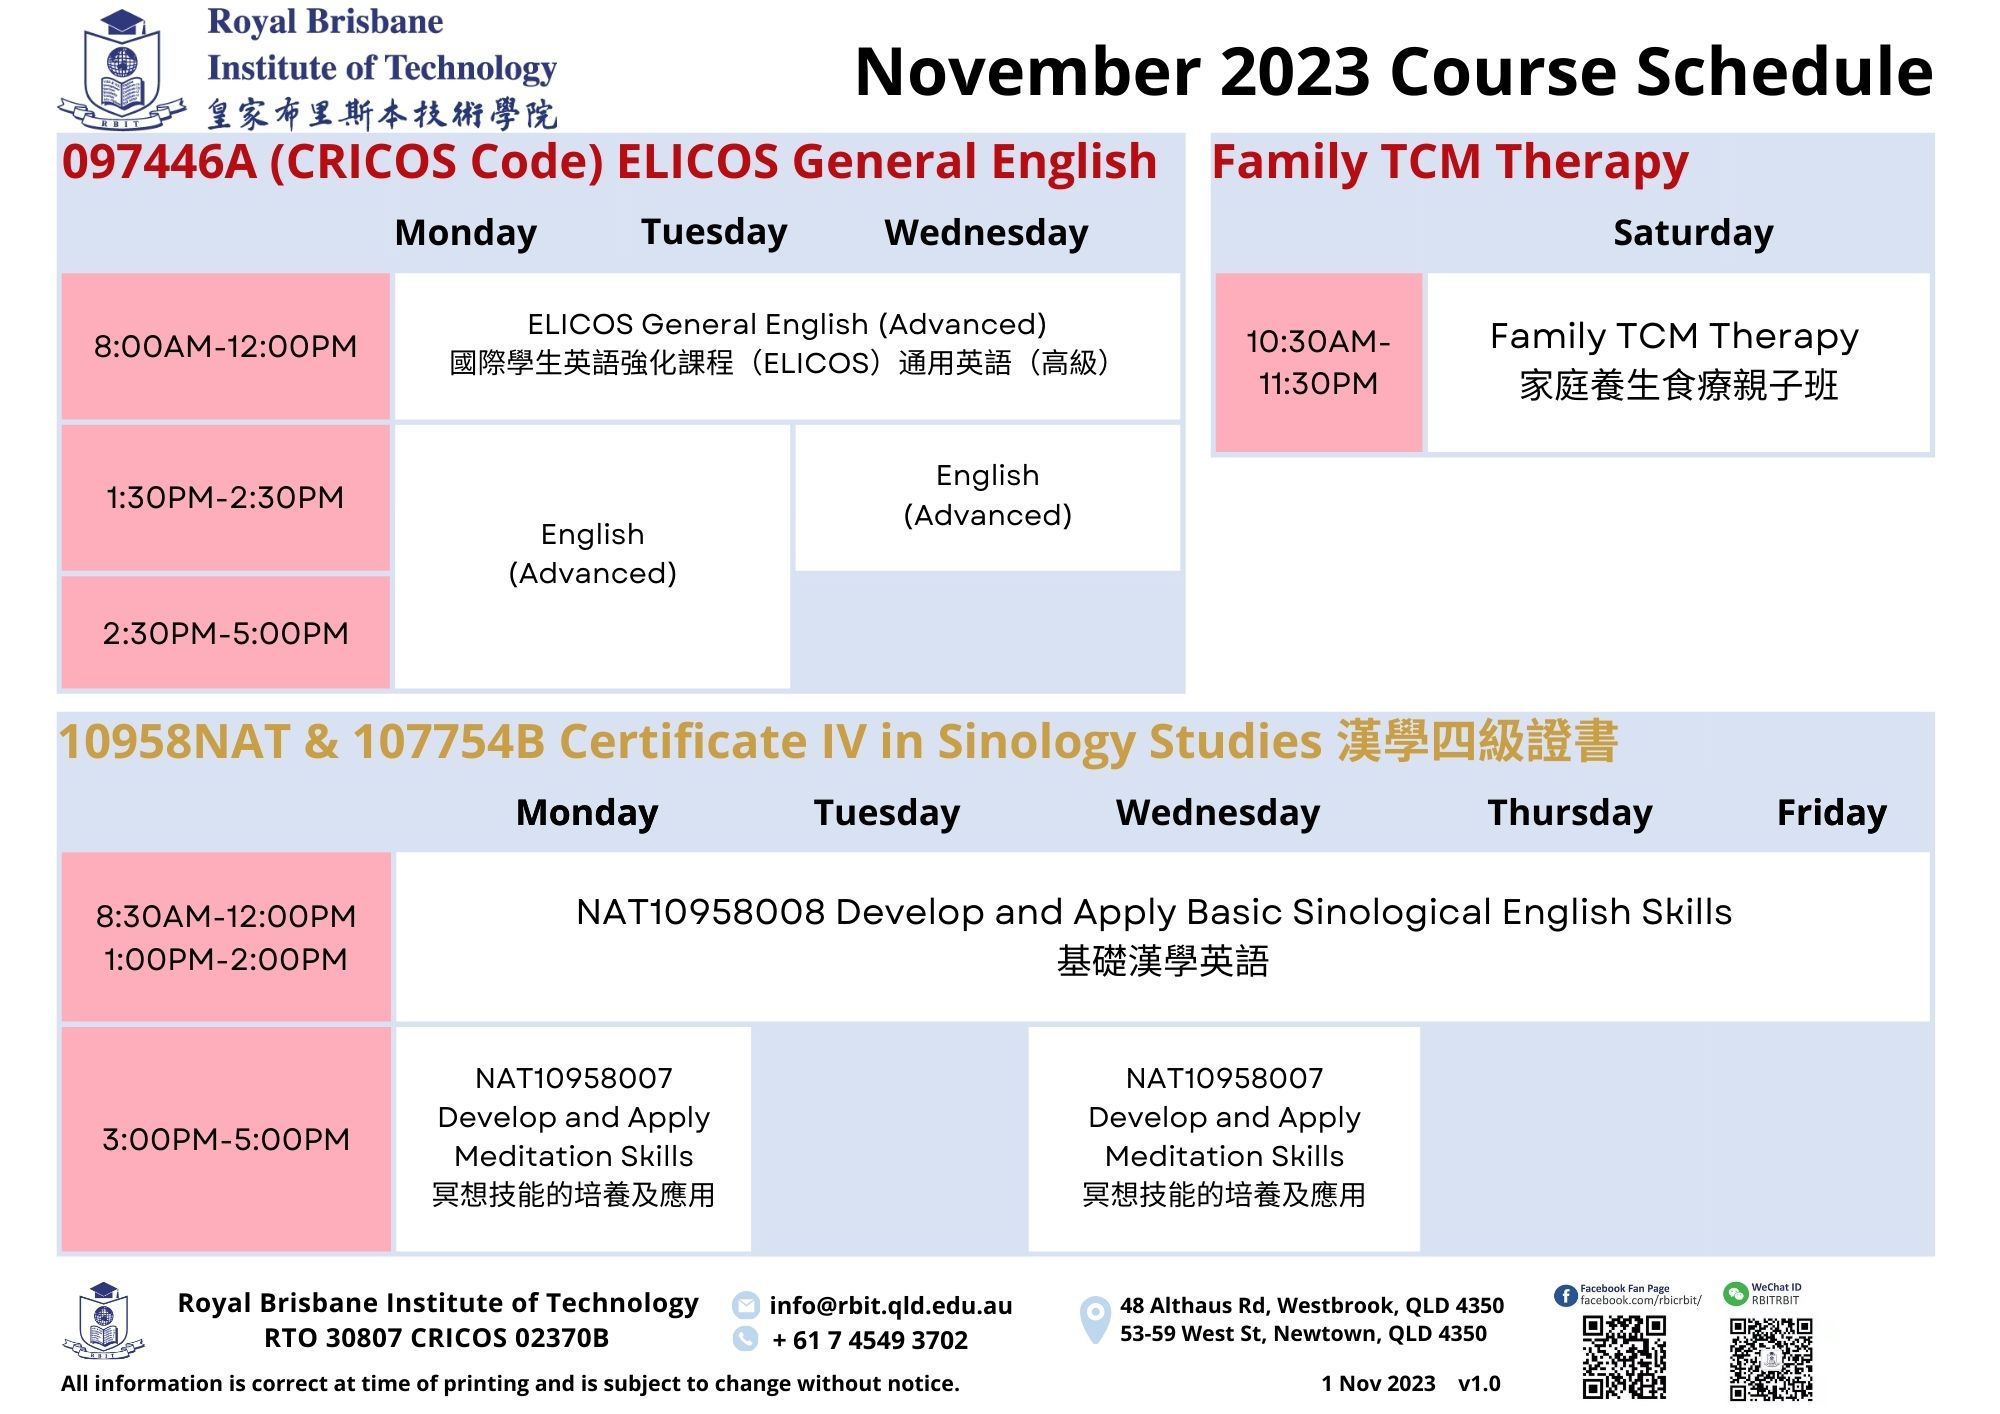 AL0_202311 Course Schedule_v1.0.jpg